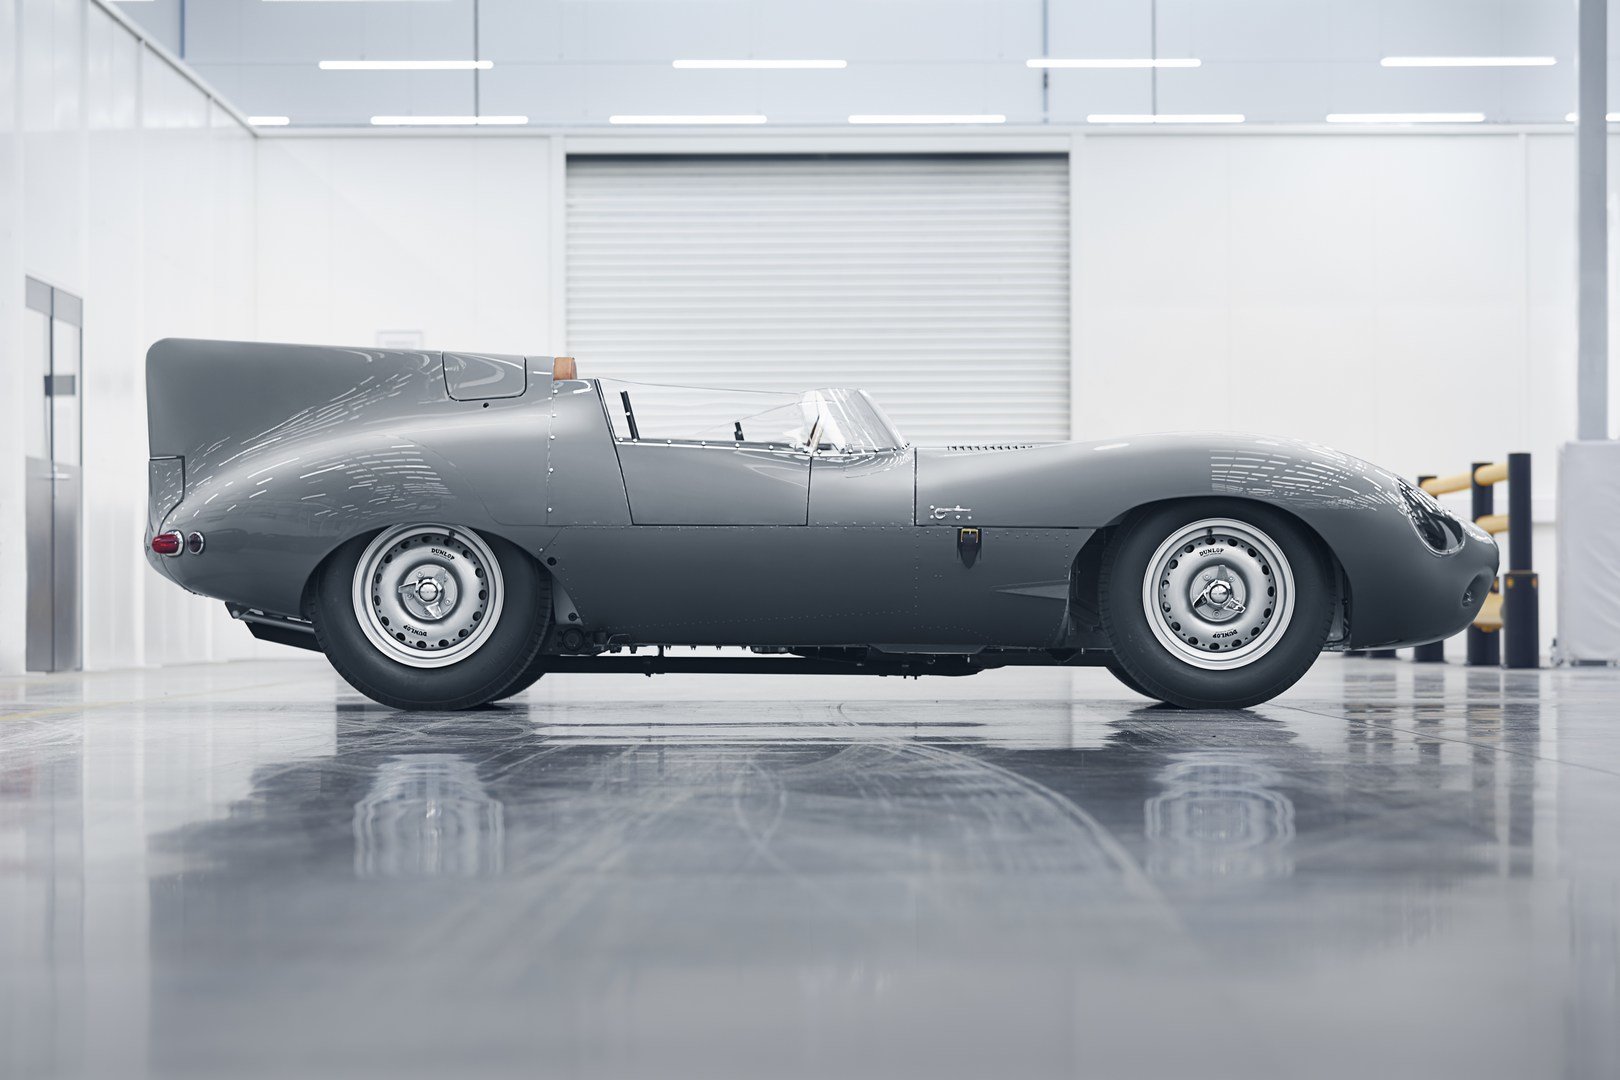 Po 62 letech obnoví automobilka Jaguar výrobu modelu D-Type